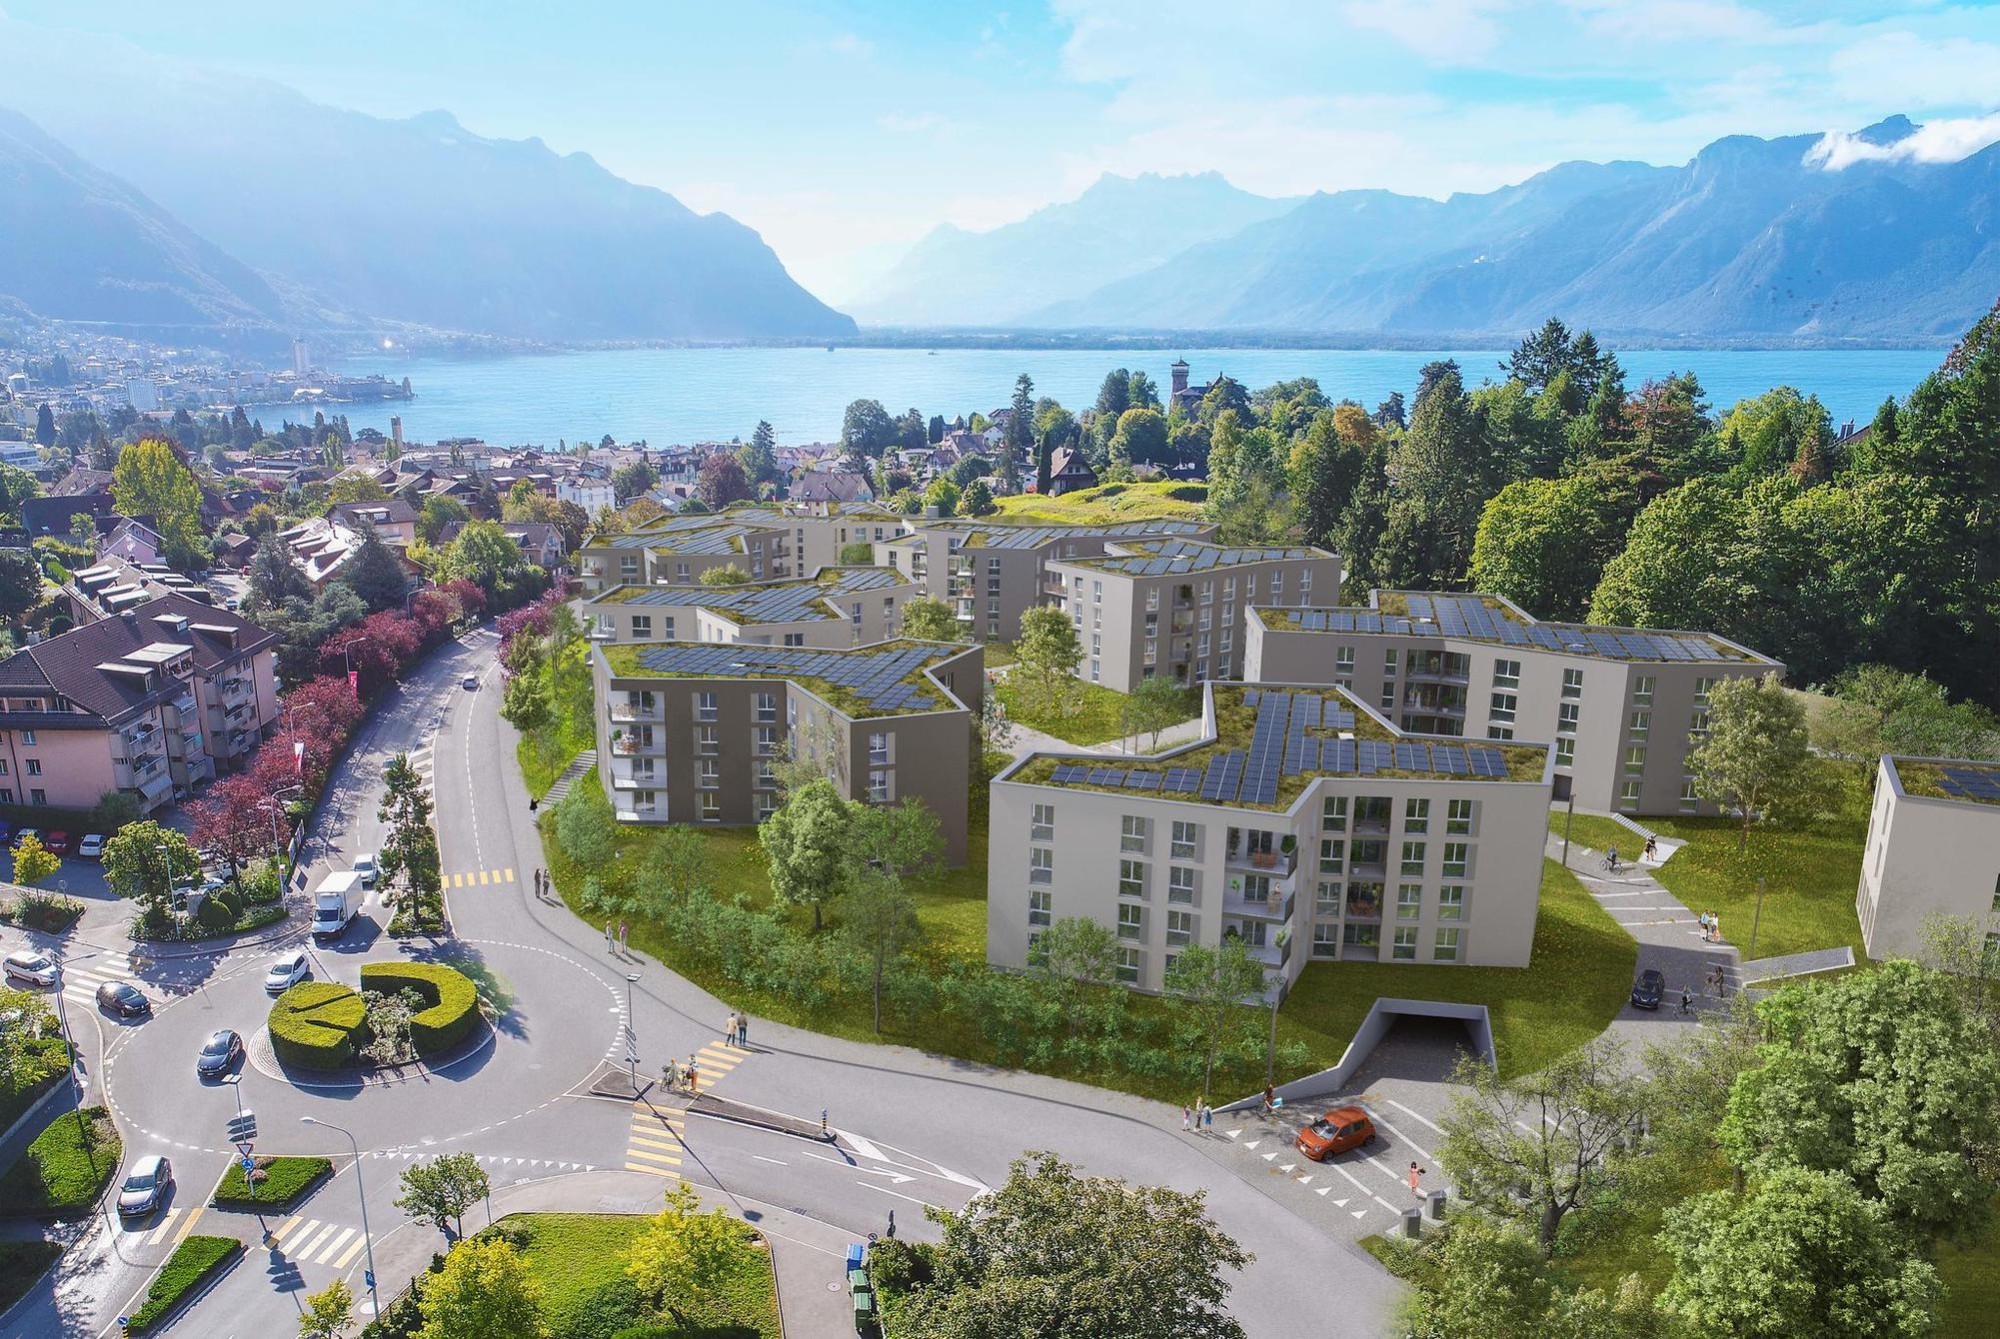 A Montreux, l’écoquartier des Grands Prés prévoit 11 immeubles à l’horizon 2025 pour accueillir un peu plus de 500 nouveaux habitants. Le complexe, dont la forme des immeubles évoque des neurons, prévoit 232 appartements, avec un parking souterrain de 260